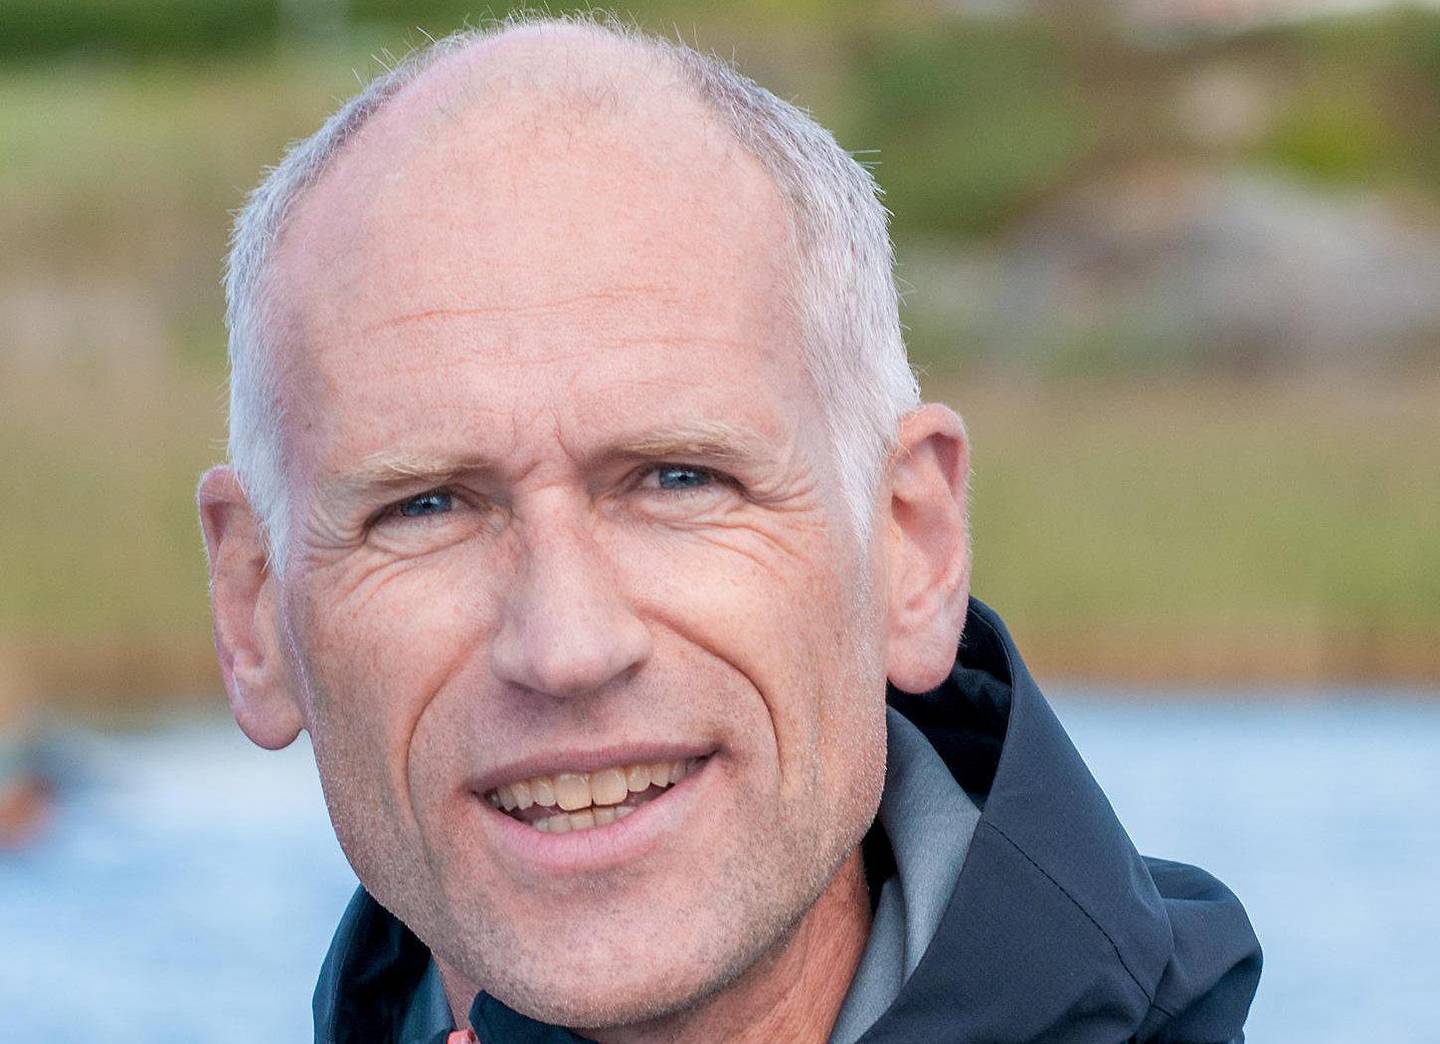 BEKYMRET: Kjetil Johannessen, nestleder i Oslofjordens Friluftsråd.FOTO: OSLOFJORDENS FRILUFTSRÅD